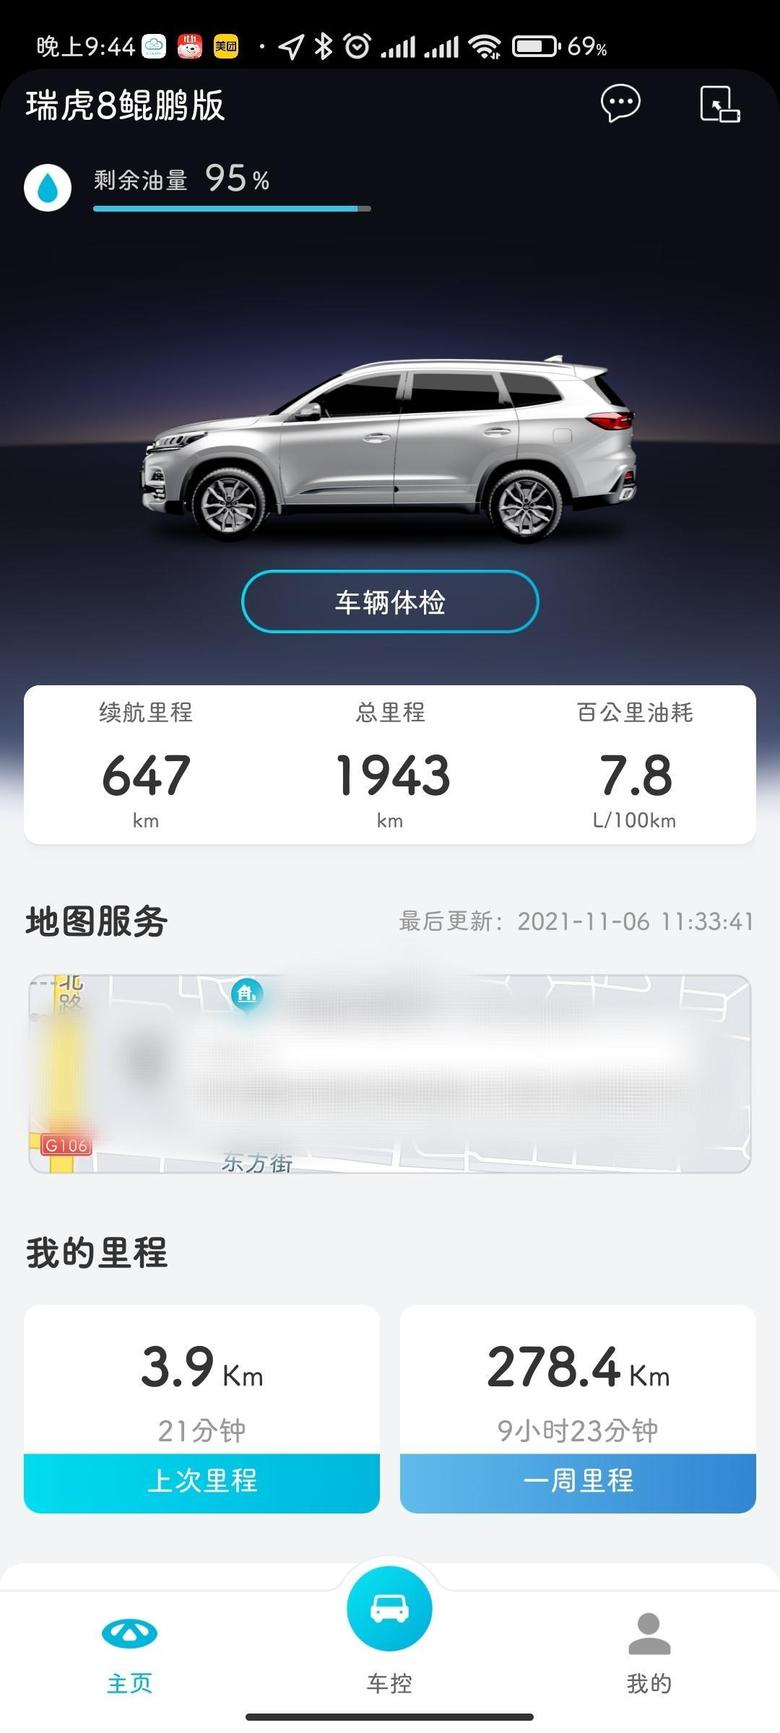 瑞虎8每天上班路线北京高速，五环，四环，不定时堵车，最低到过7.6.和驾驶习惯有直接关系。一直经济模式，因为是2.0排量感觉ECO模式够用。